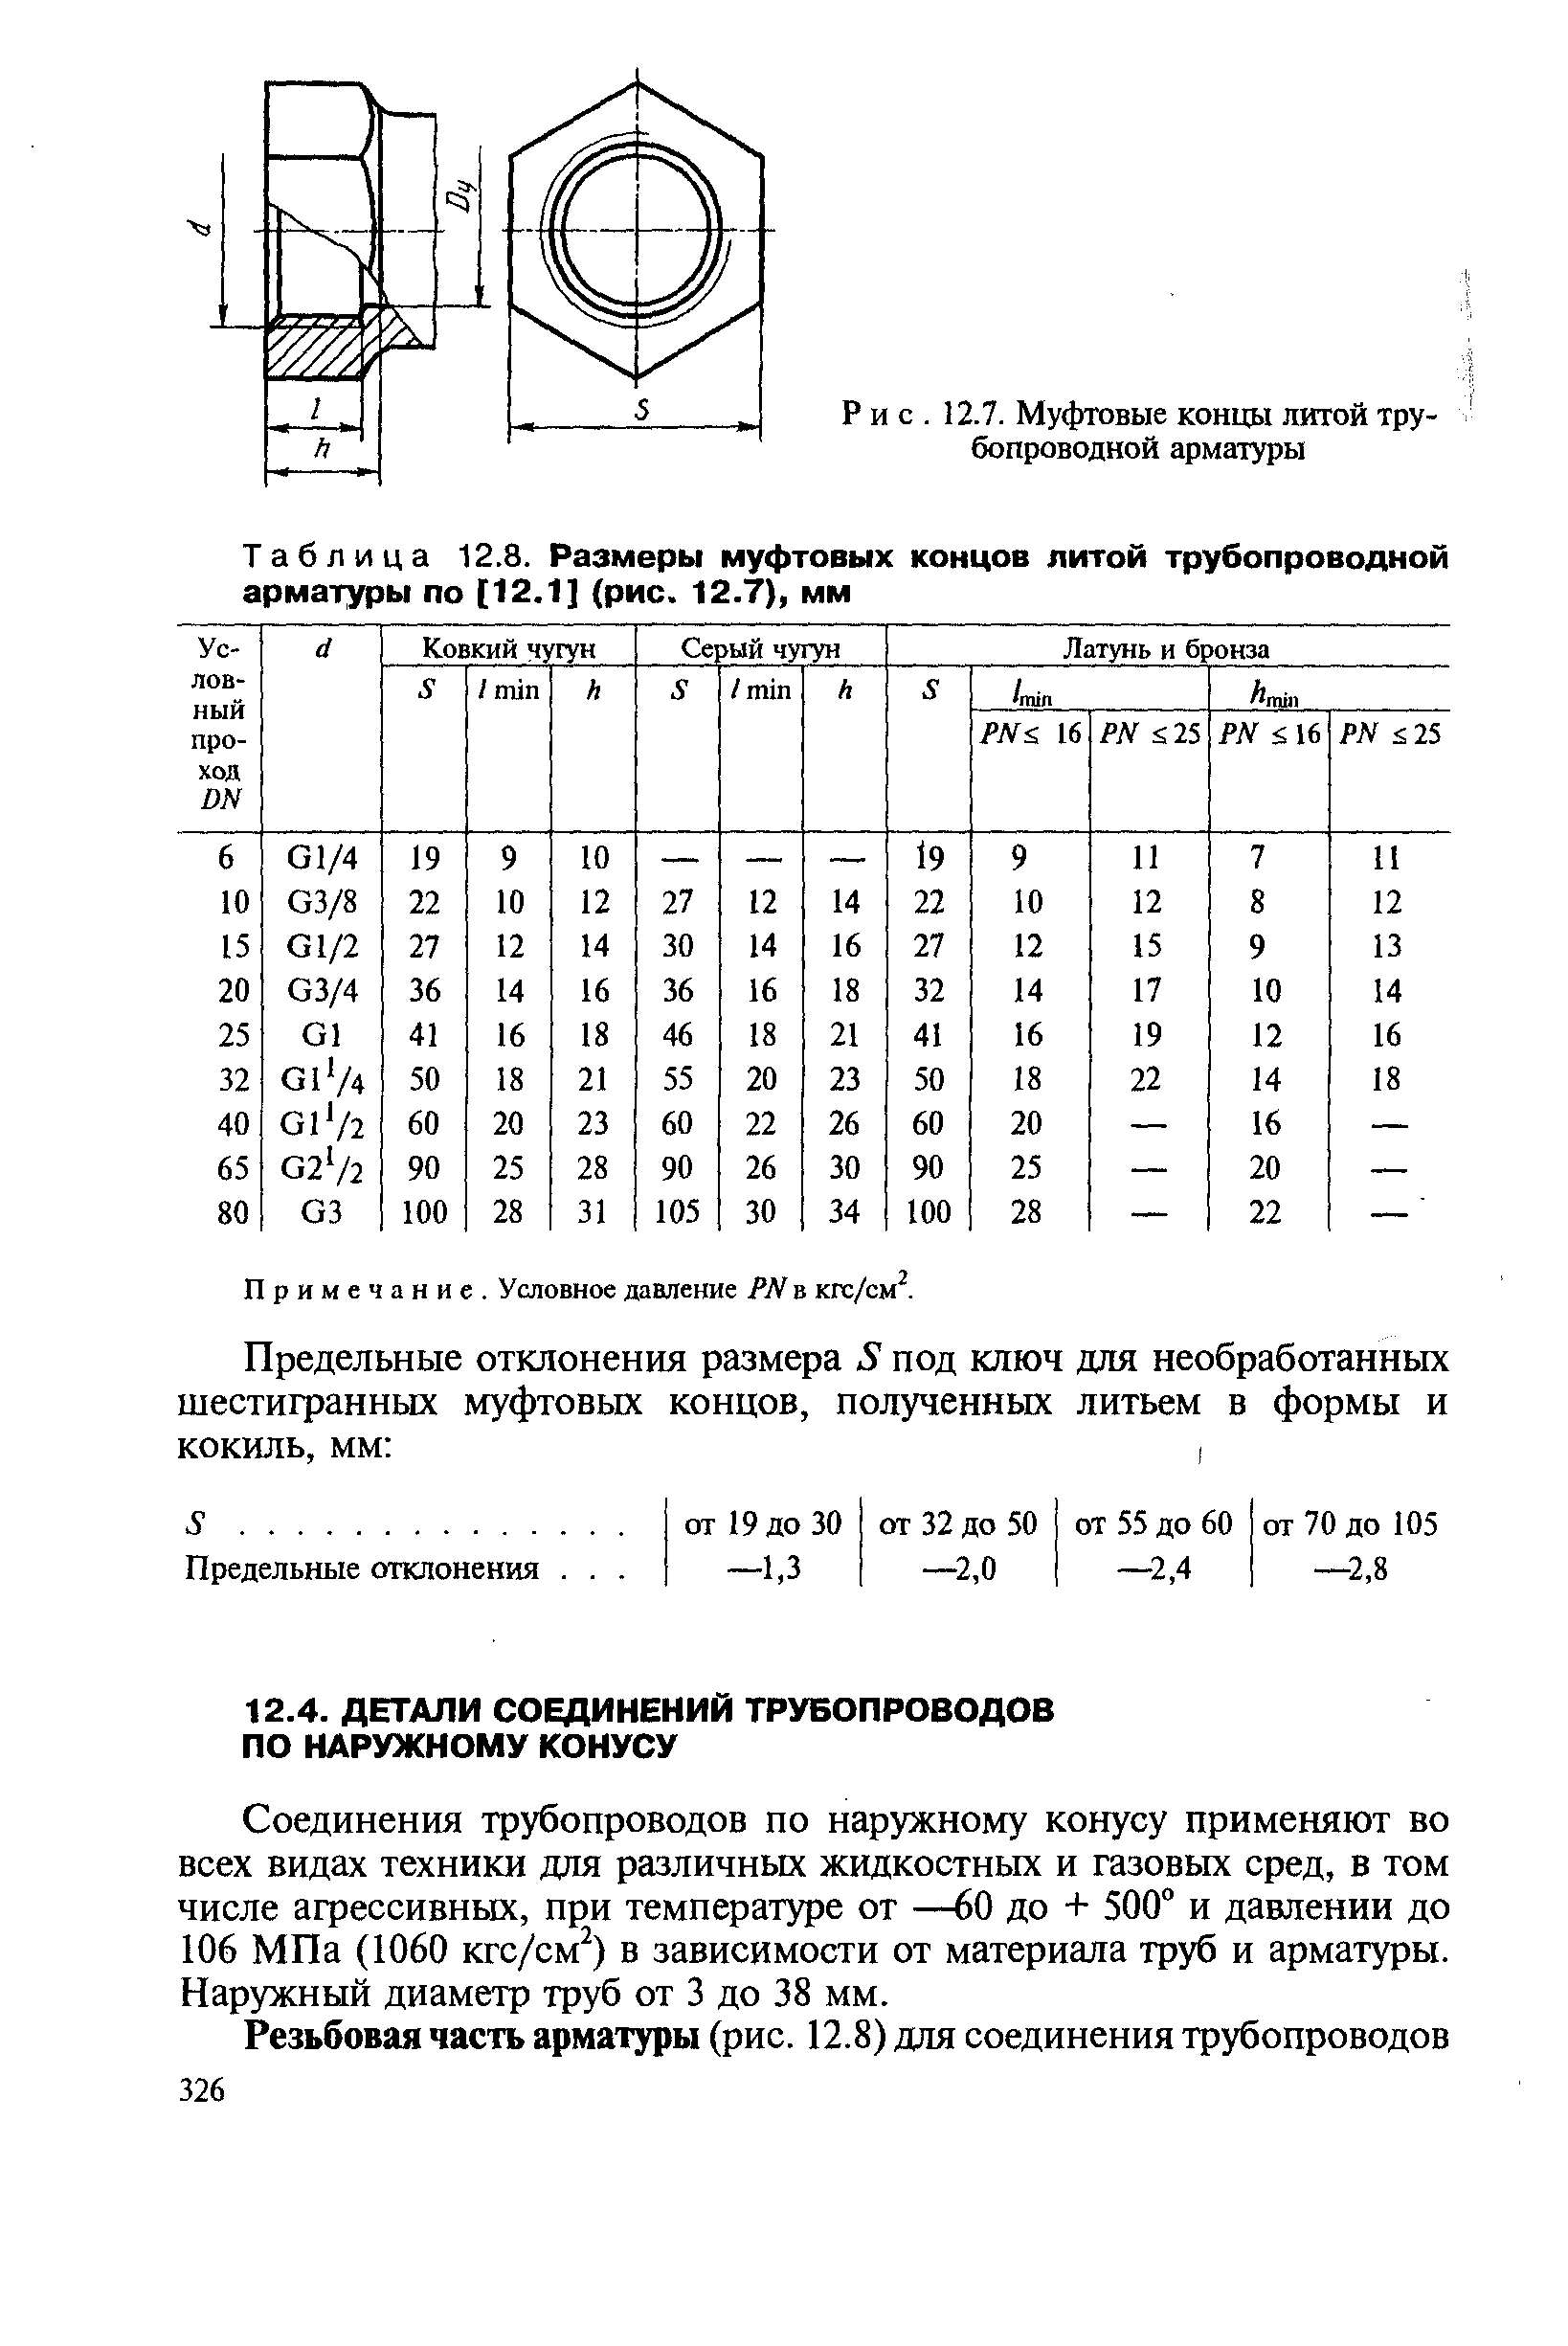 Таблица 12.8. Размеры муфтовых концов литой трубопроводной арматуры по [12.1] (рис. 12.7), мм
